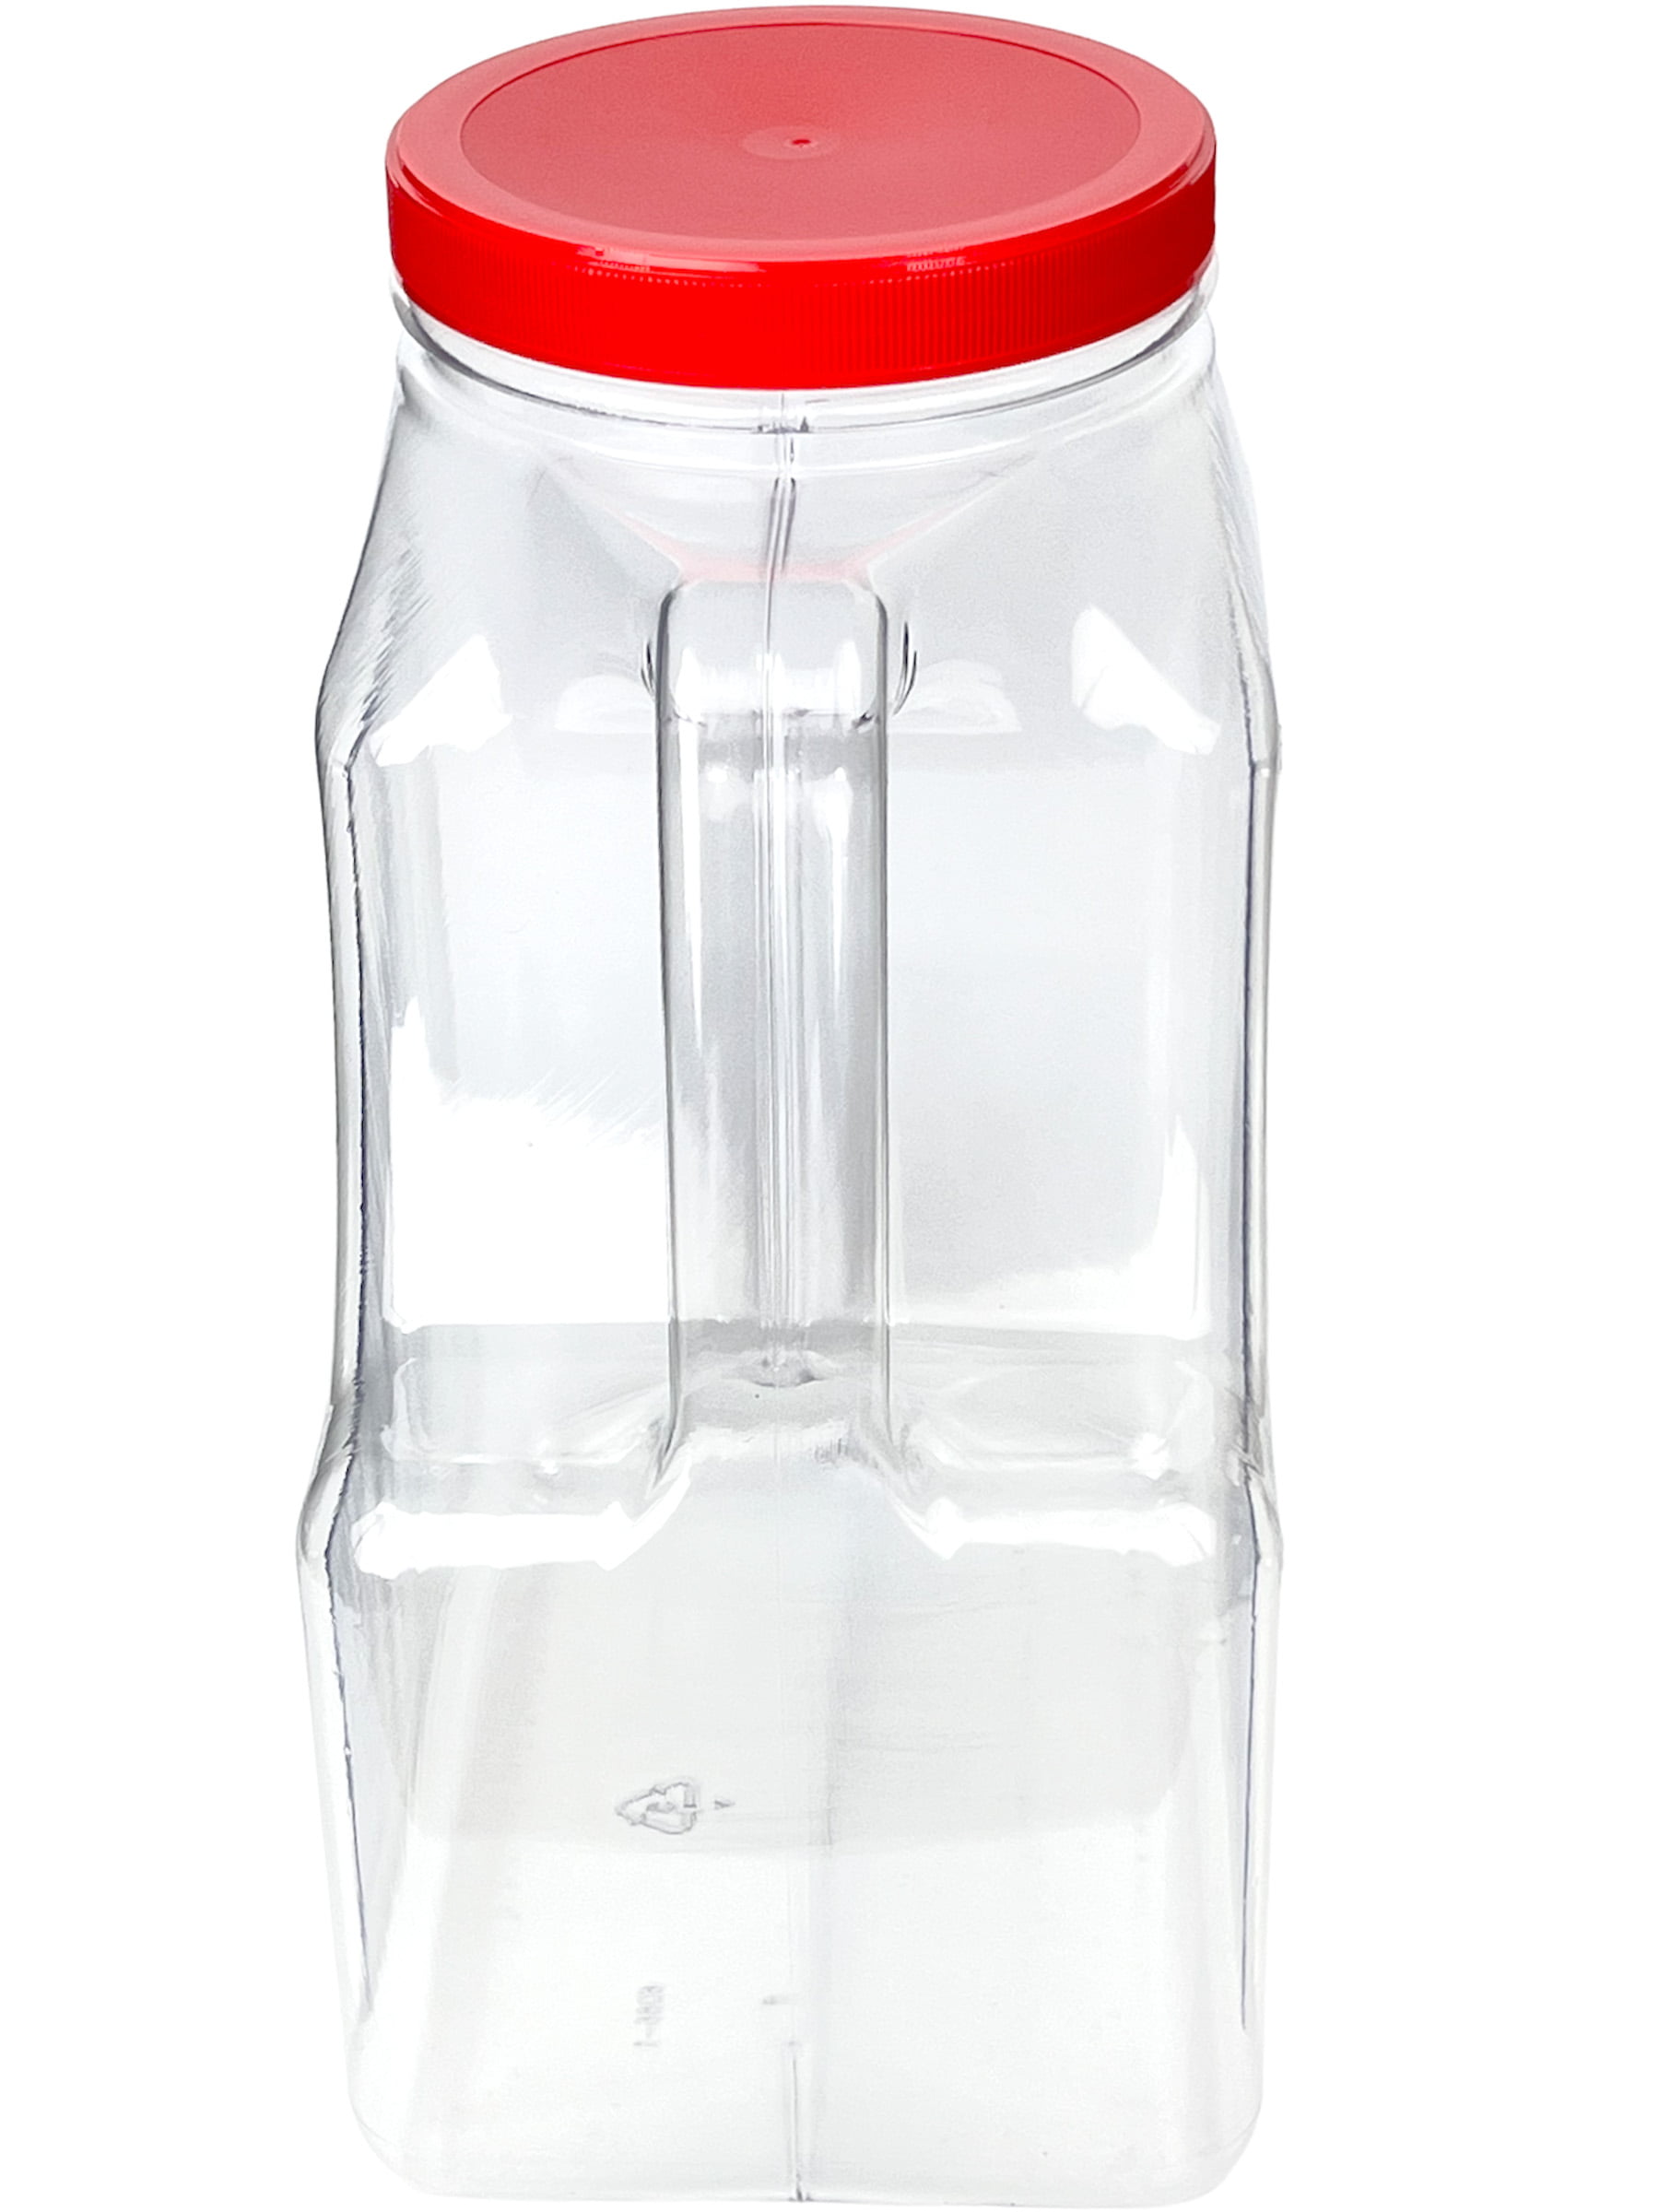 Jar & Cap Combo Case (240 pcs) : 115mm - 24 oz Deli Containers - Buy  Plastic Jars, Bottles & Closures Wholesale - Manufacturer Direct - Parkway  Plastics Inc.